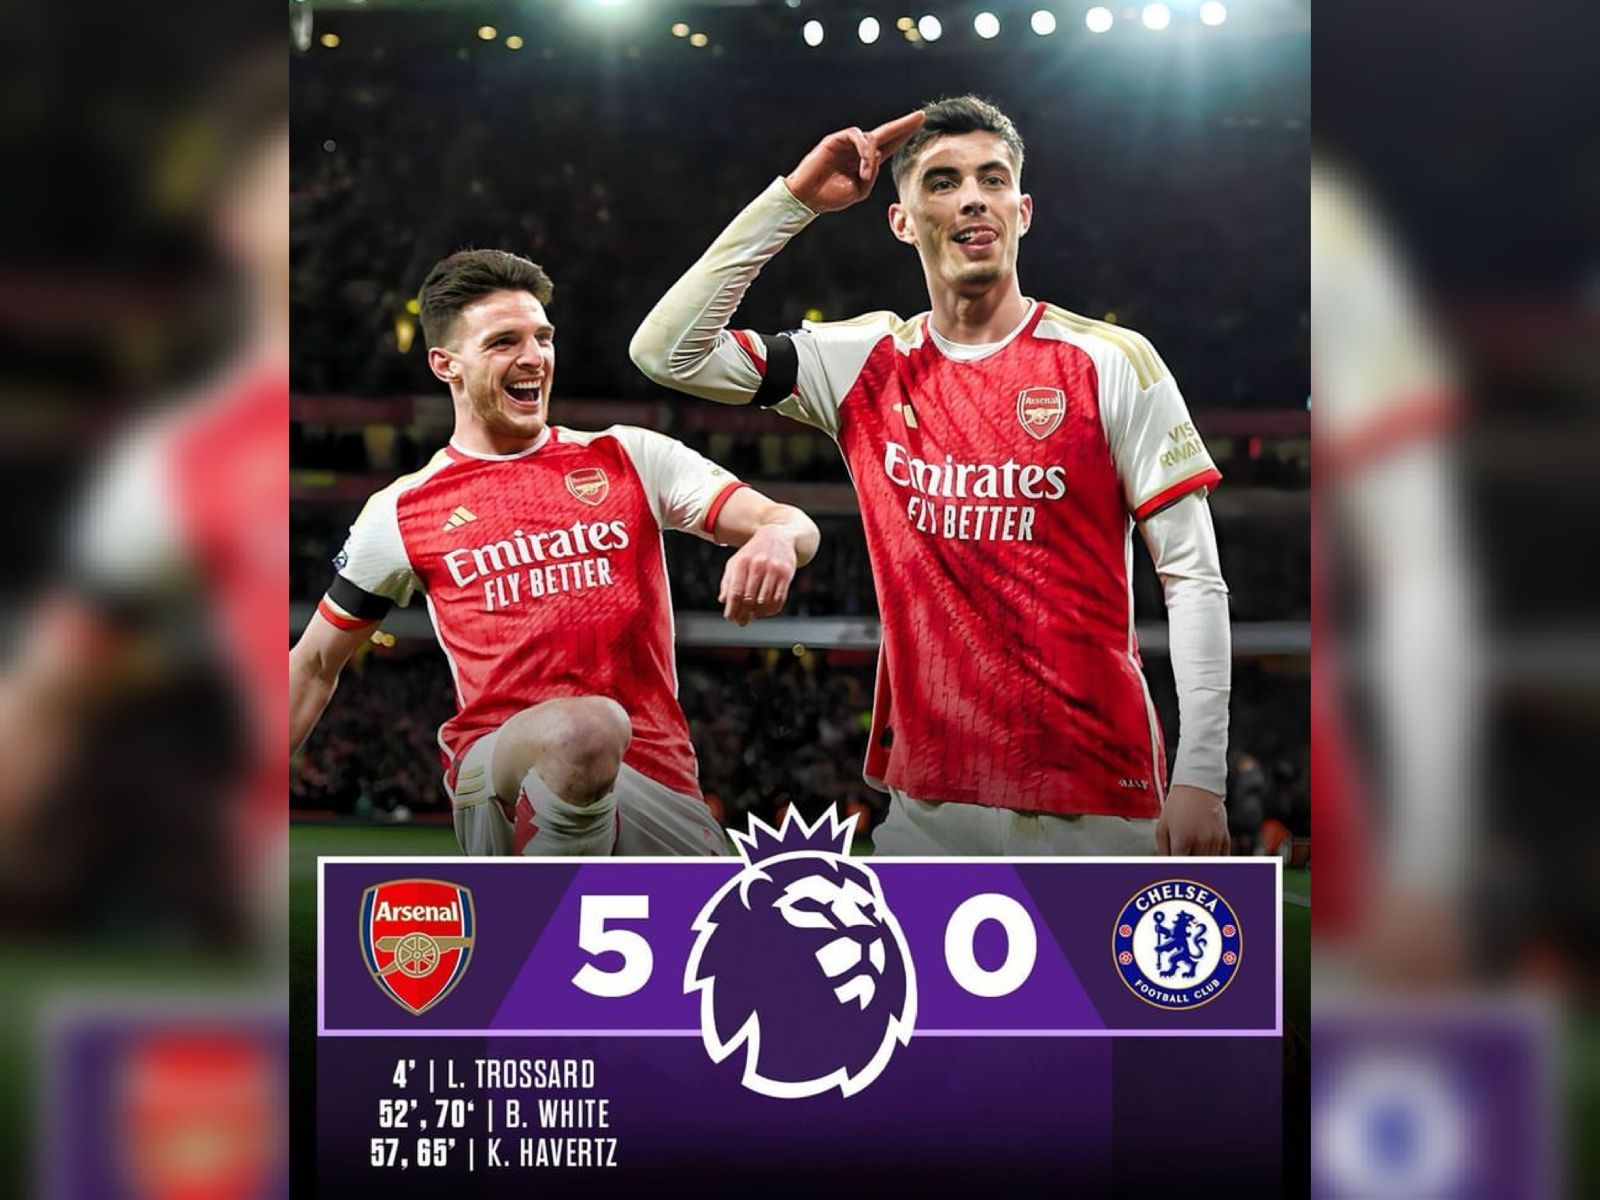 Hasil Liga Inggris Pekan 29 Arsenal vs Chelsea, Meriam London Menang Telak 5-0 